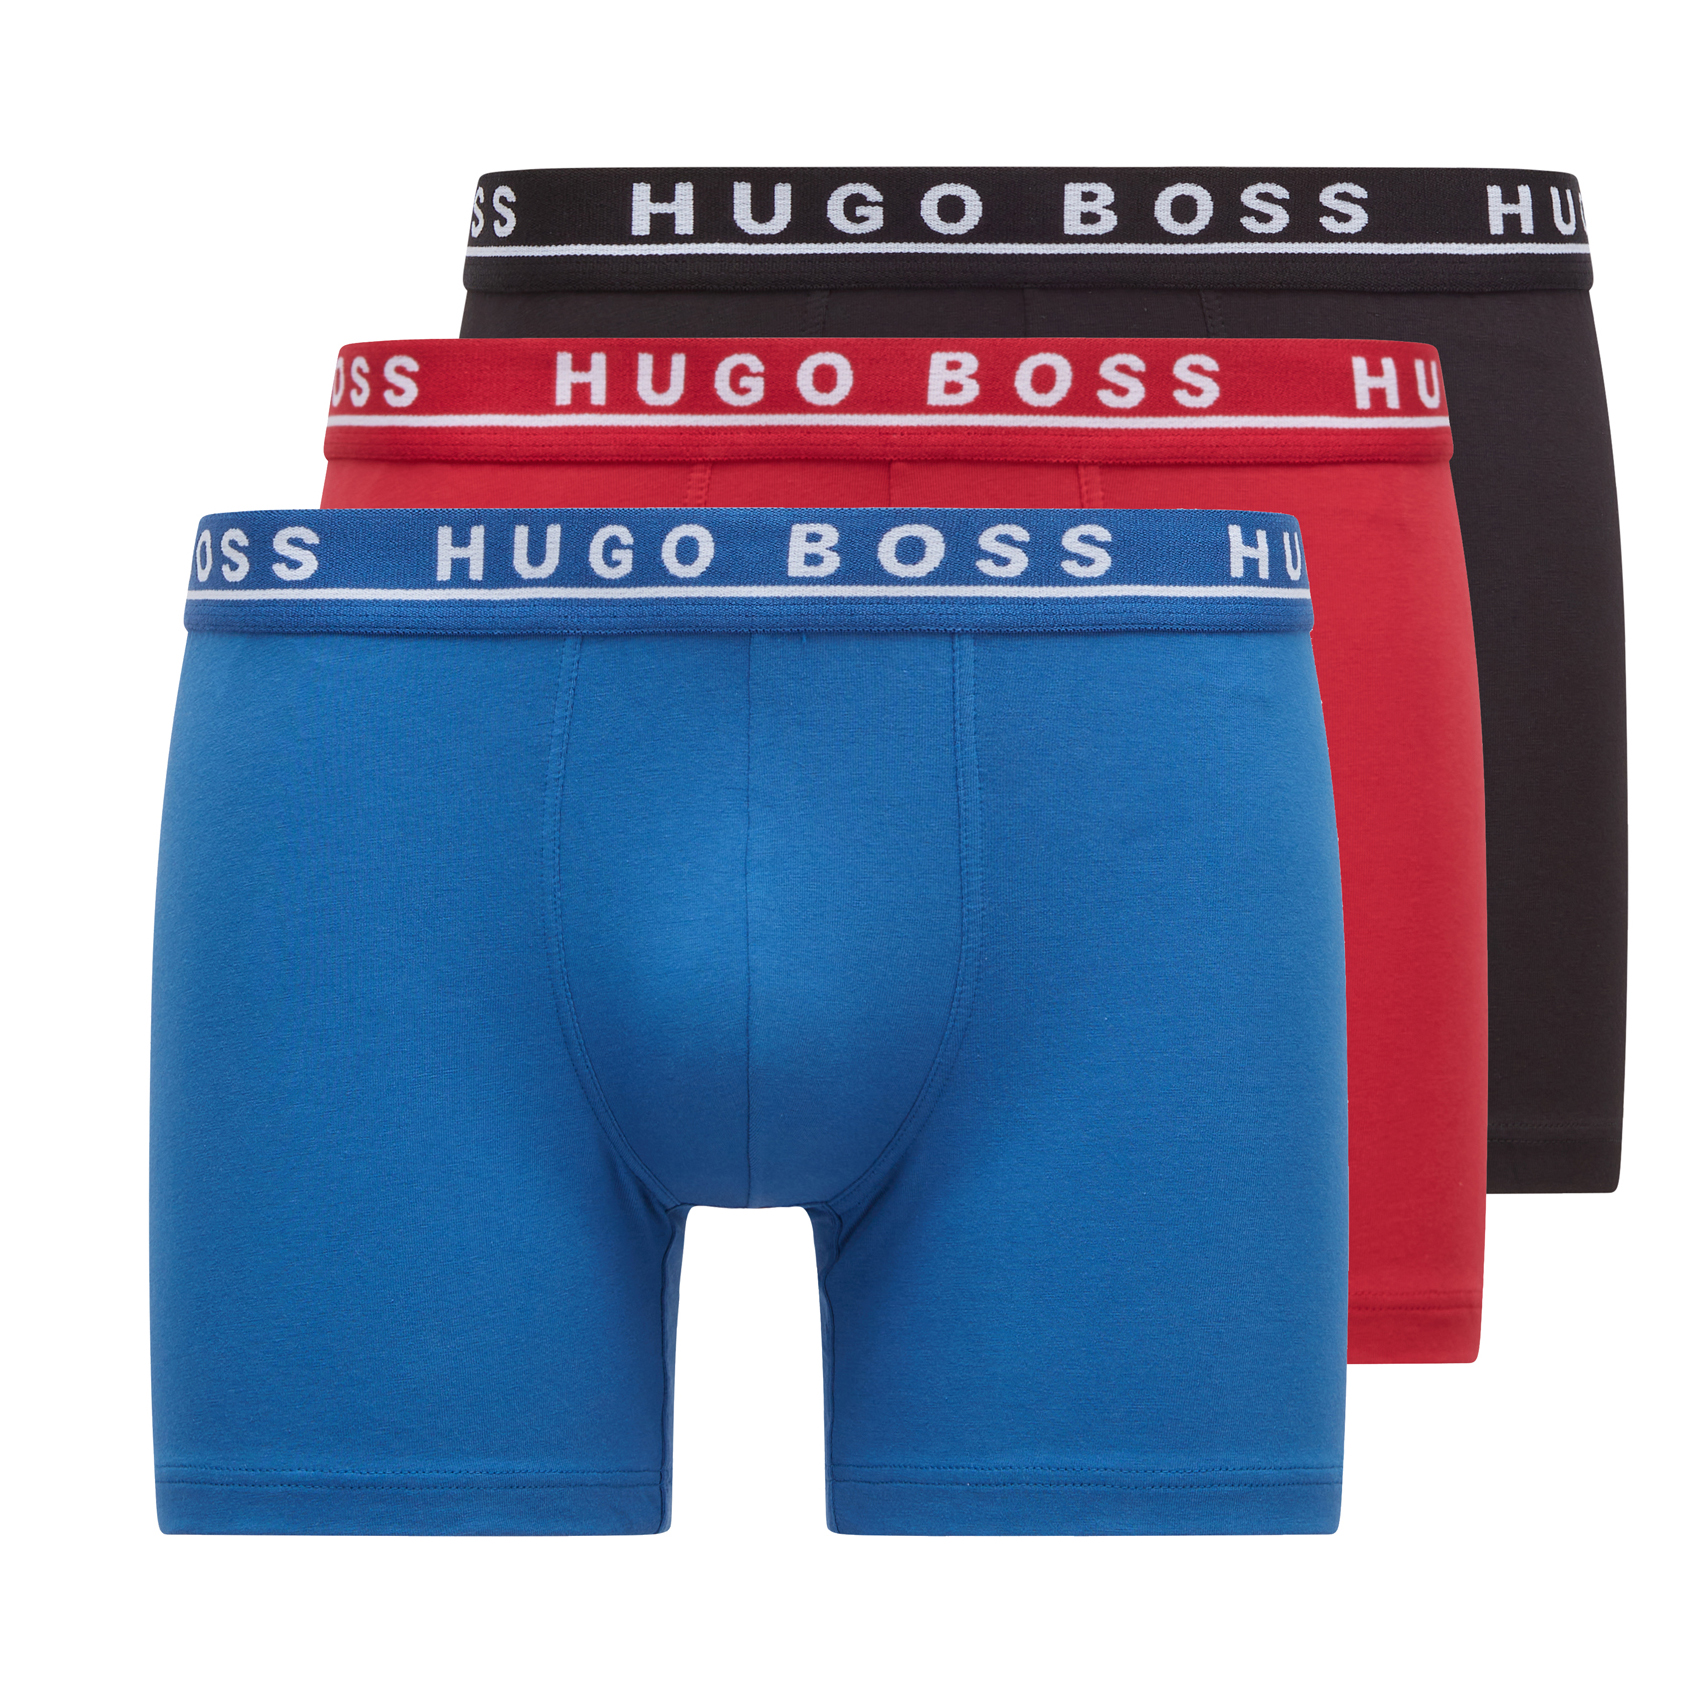 Hugo Boss Boxershort 3-pack rood-blue-zwart